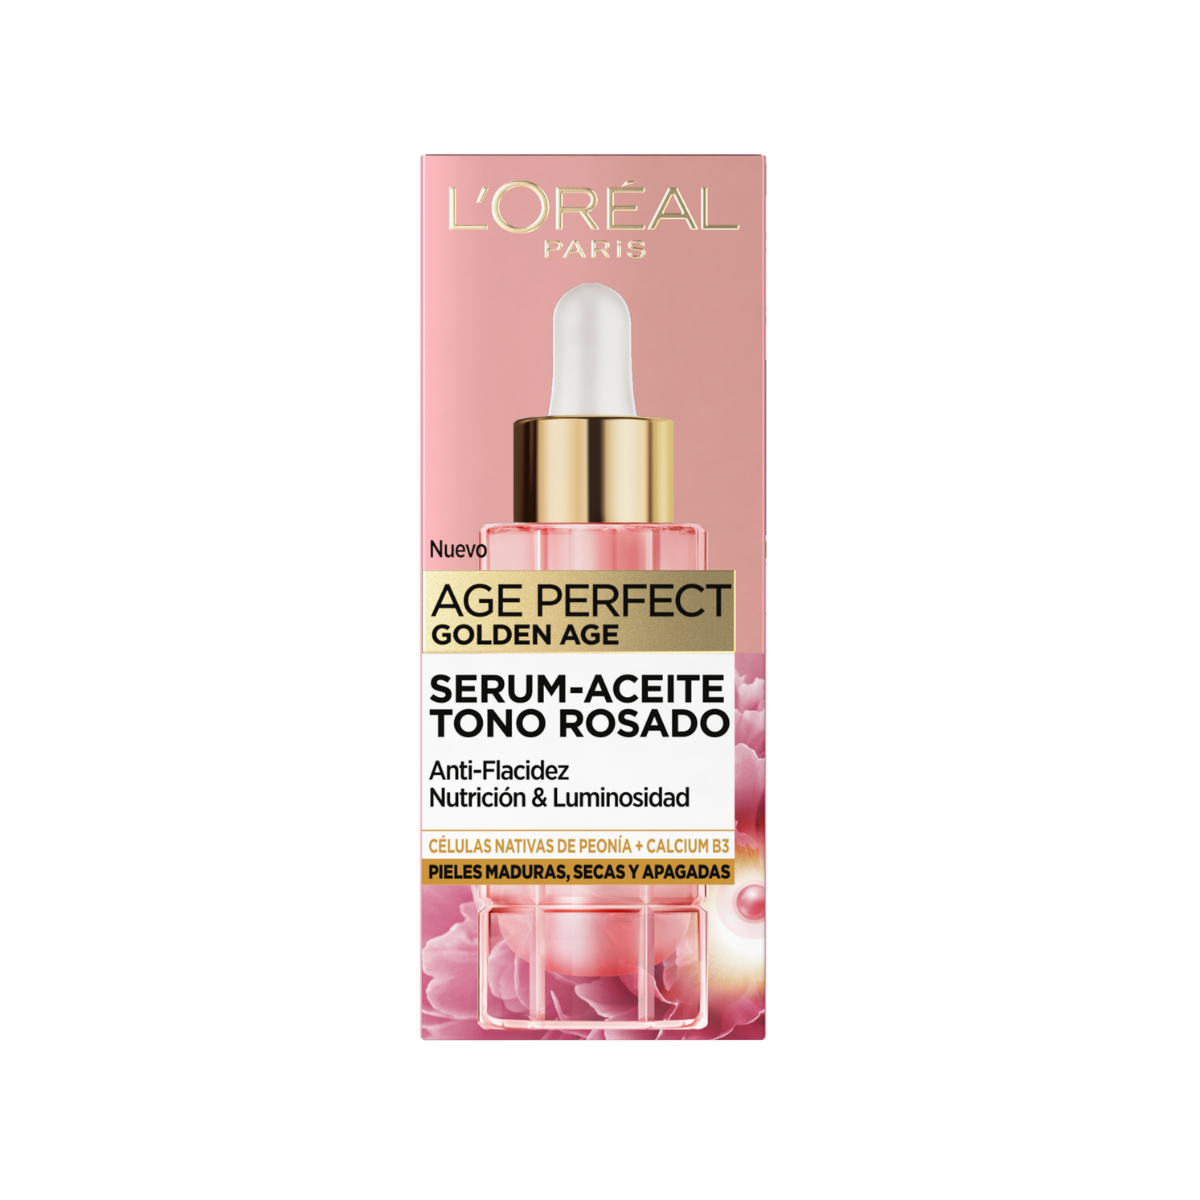 Sérum aceite tono rosado Age Perfect L'Oréal Paris